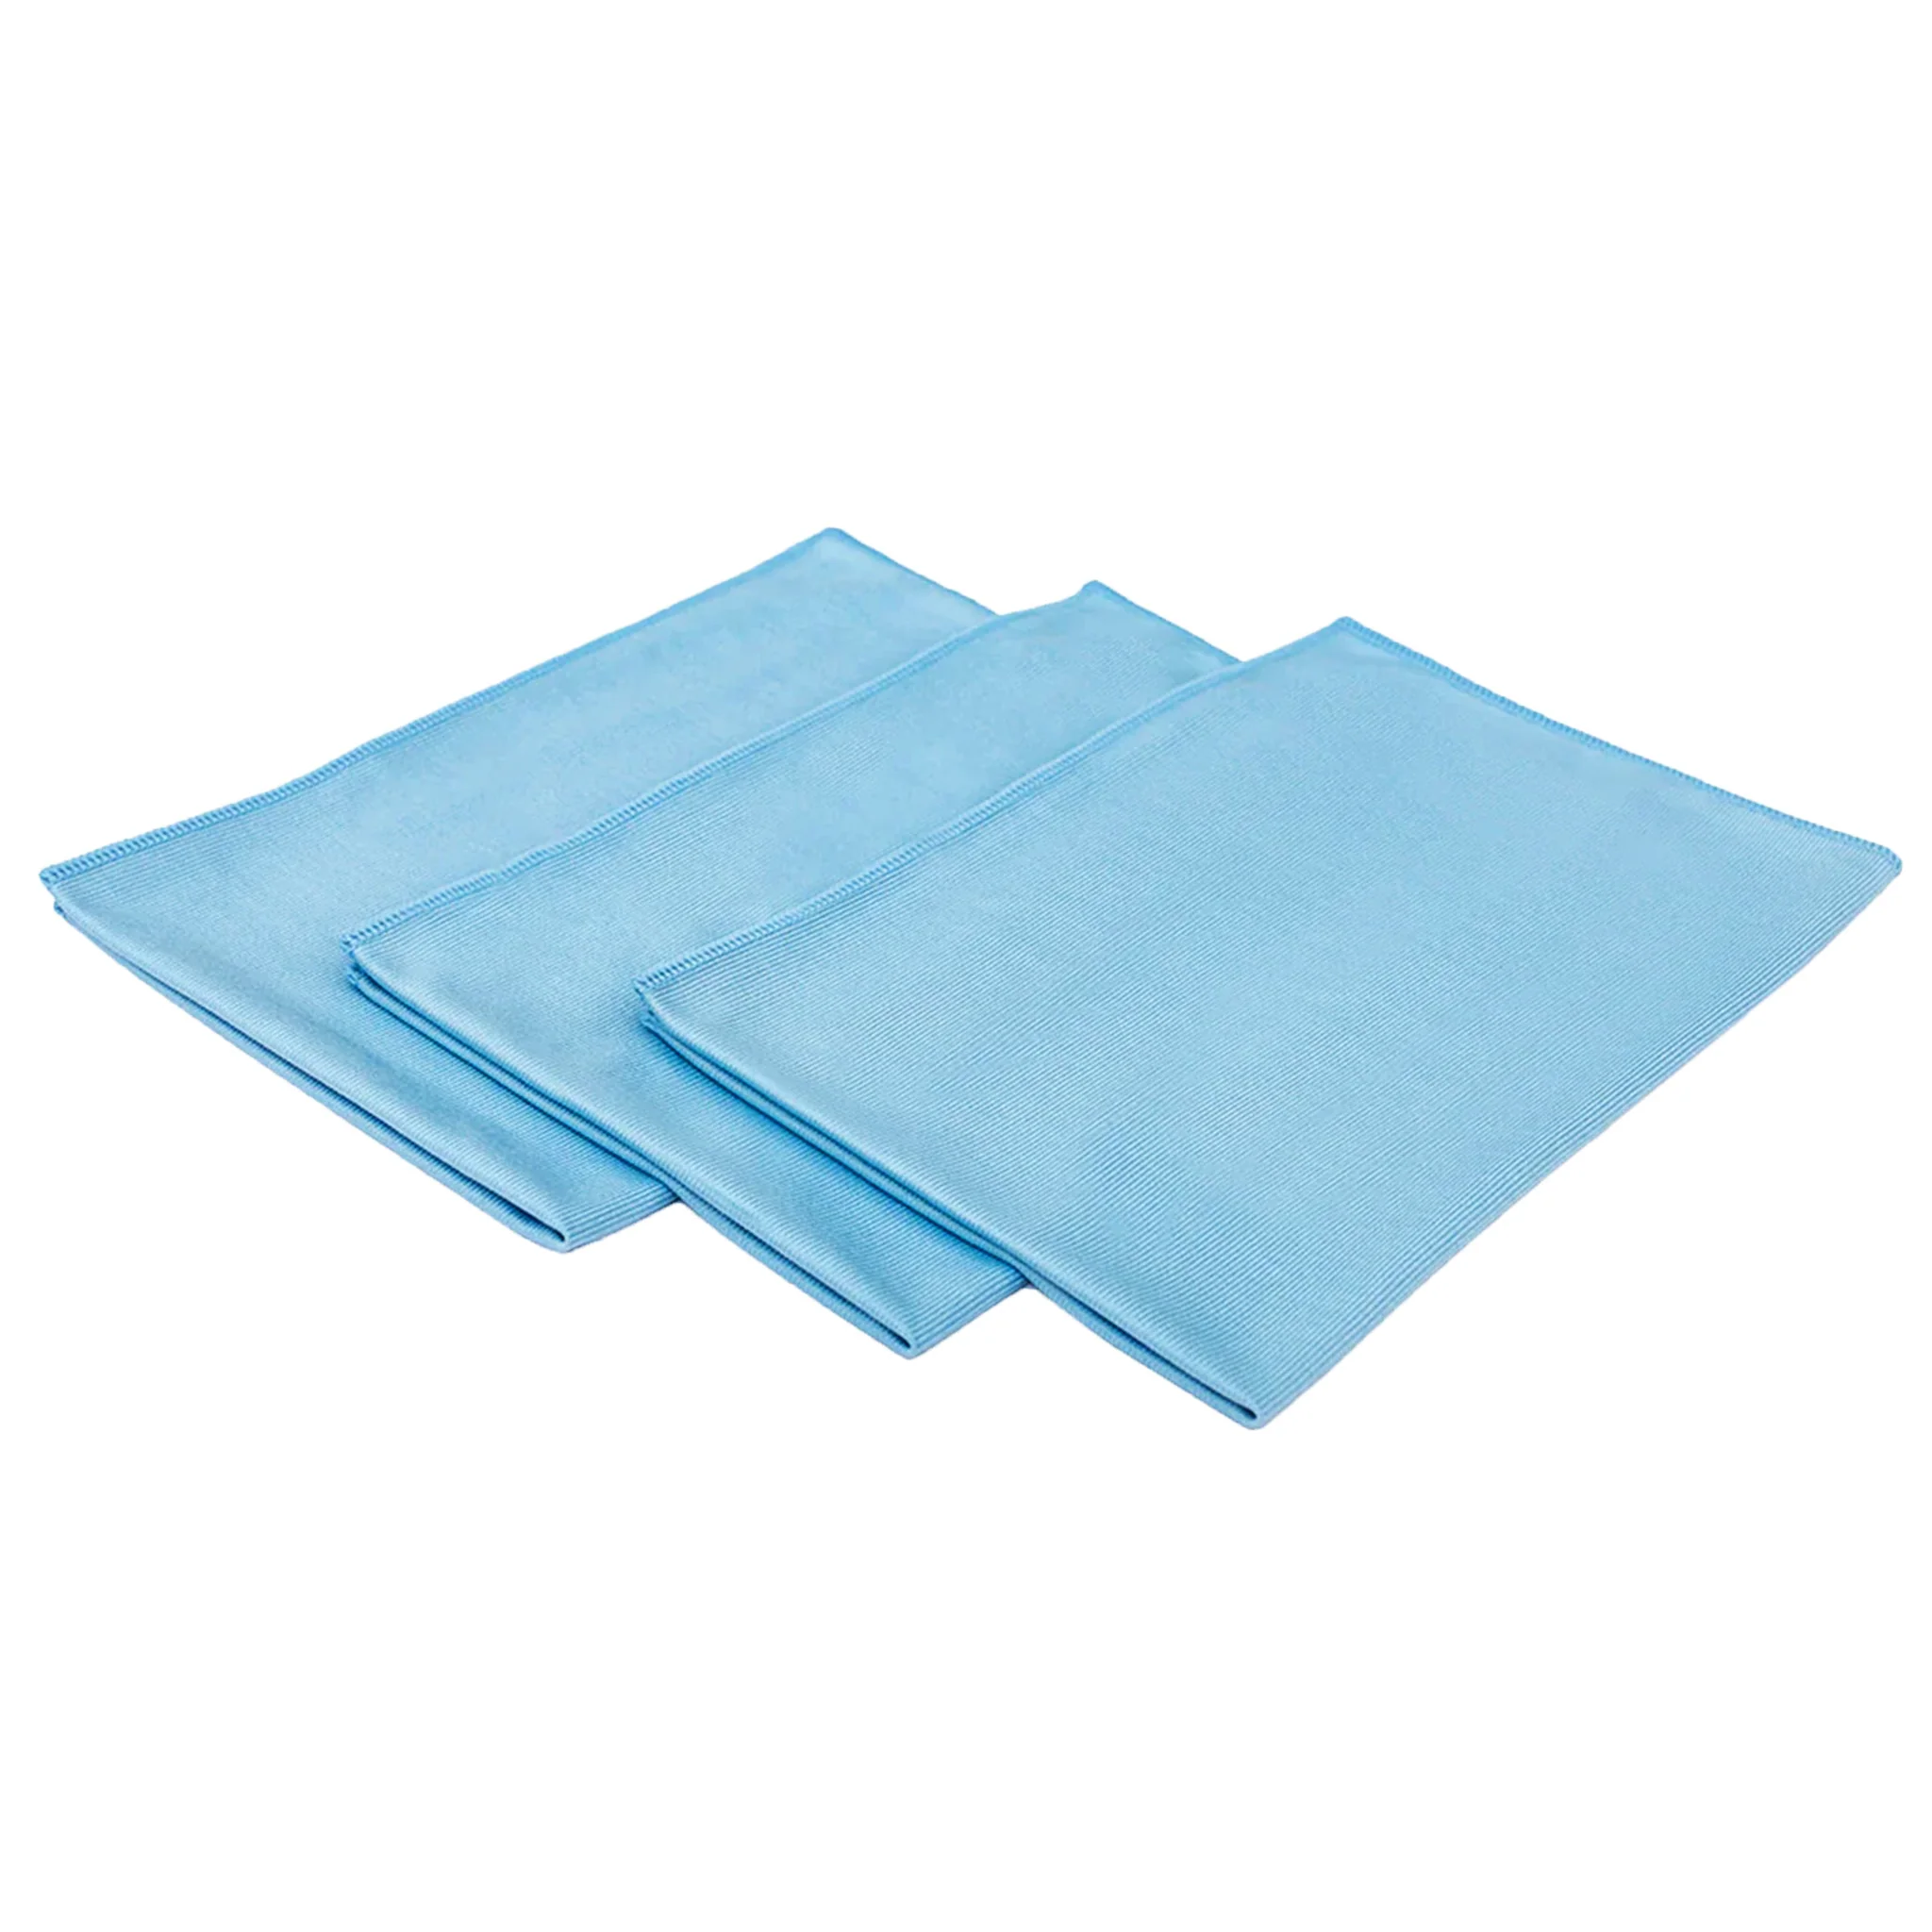 PHD Blue Glass Towel svilenasti ručnik za staklo je savršen ručnik za čišćenje staklenih površina. Tanka struktura, izrađena od mekog i svilenkastog materijala savršeno radi sa sredstvom za čišćenje stakla bez ostavljanja tragova ili vlakana na očišćenoj površini.